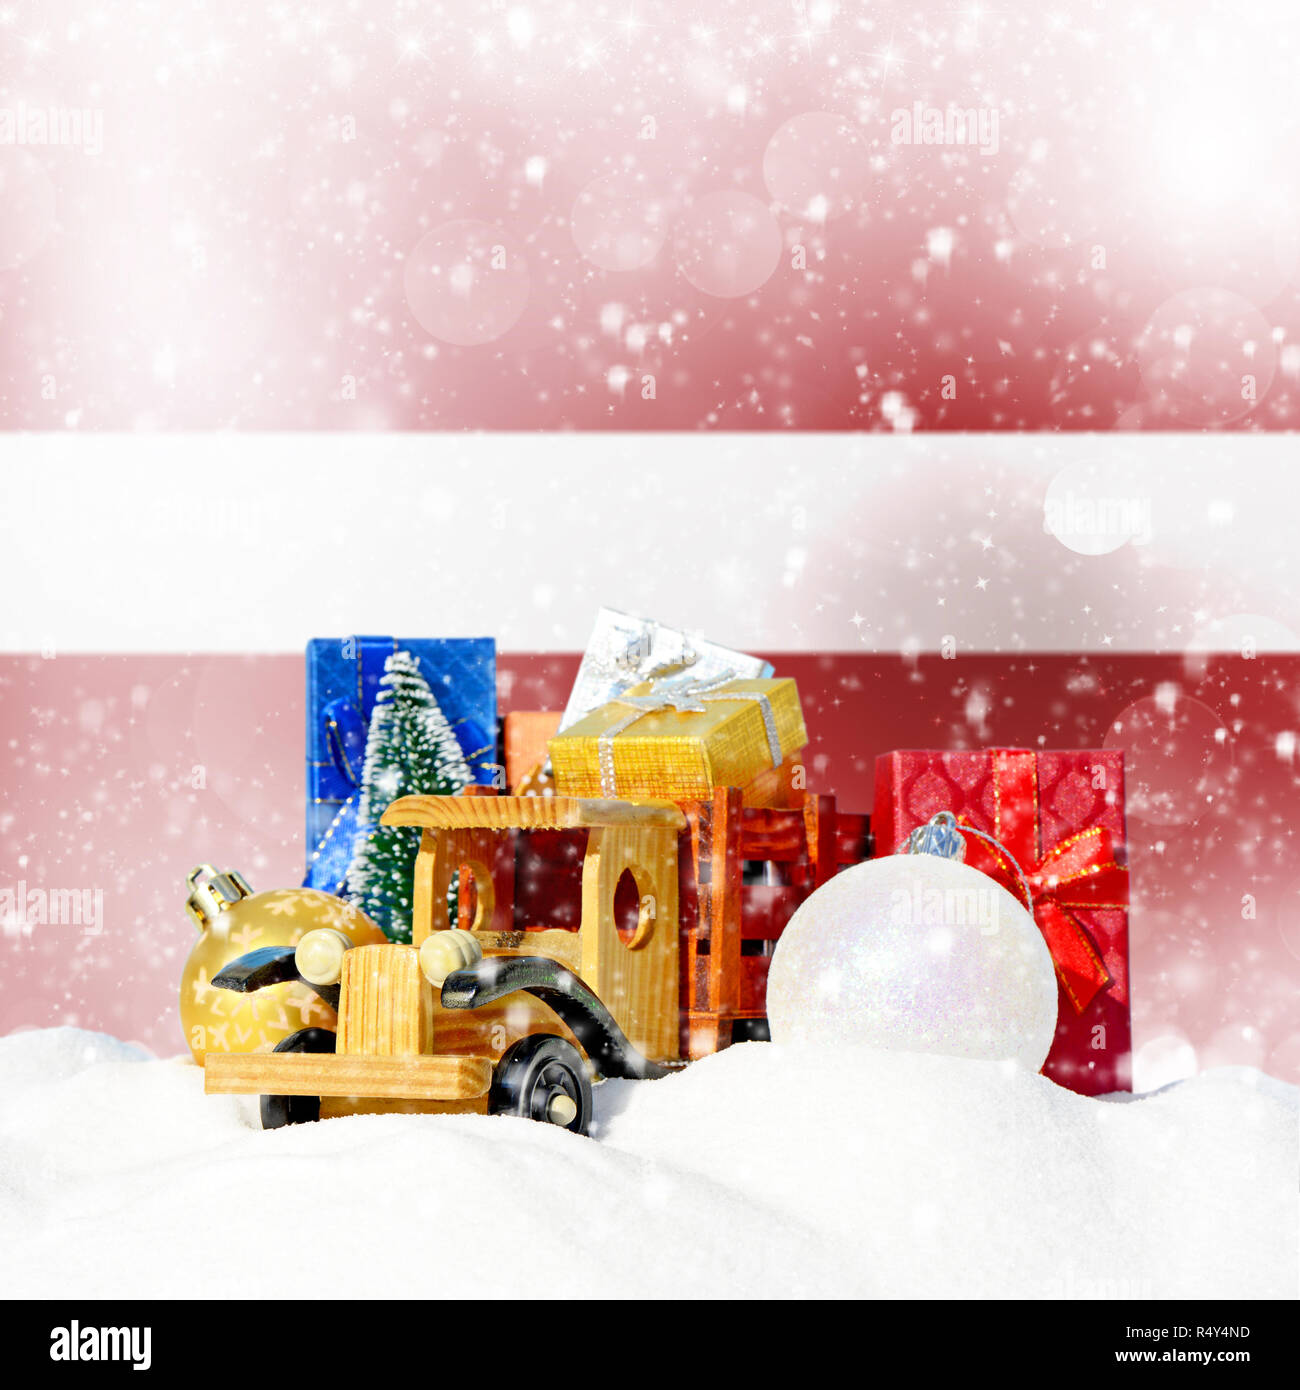 Weihnachten Hintergrund. Spielzeug-LKW mit Geschenken, Neues Jahr Tanne, Kugeln im Schneetreiben und lettischer Flagge Stockfoto